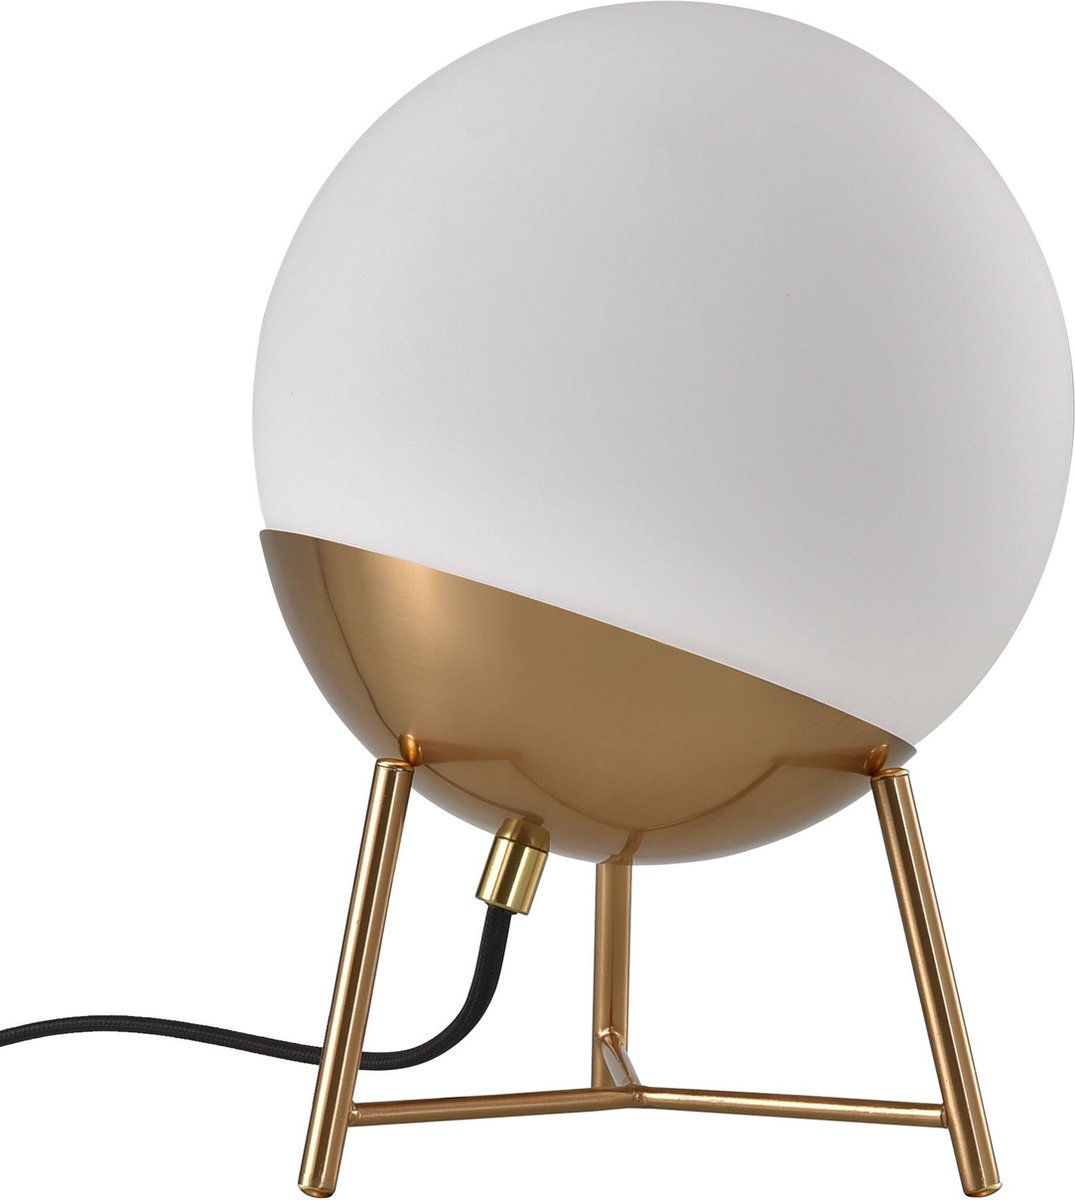 Faberge - Tafellamp - rond - wit - glas - koper - 1 lichtpunt